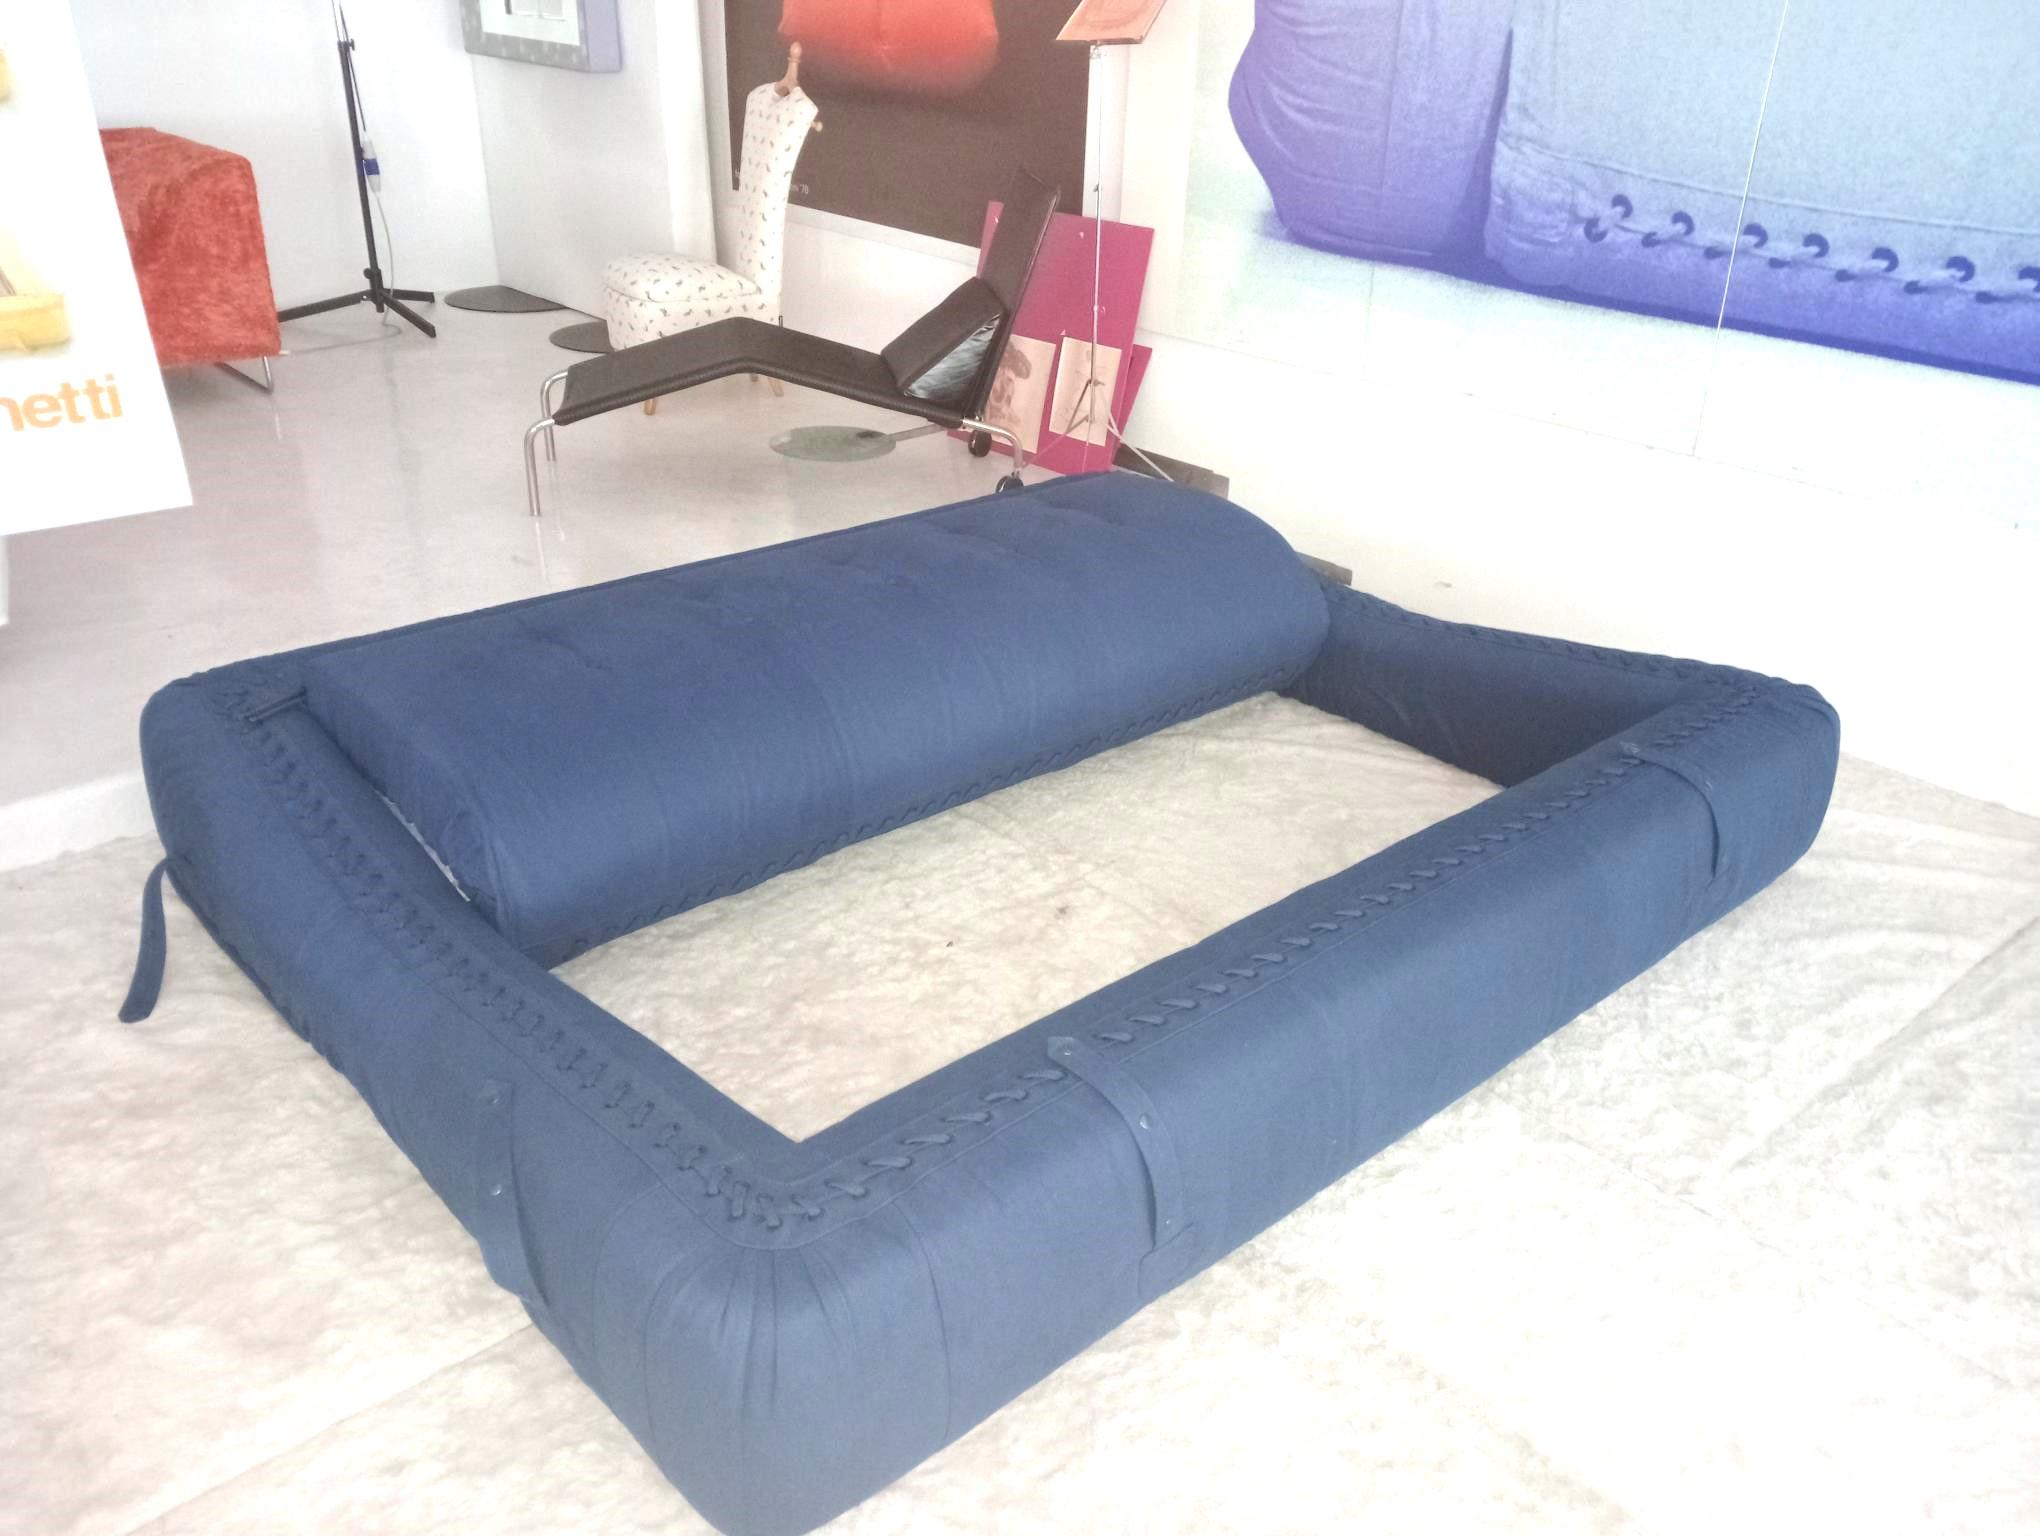 Italian Giovannetti, 1970s Anfibio Foldable Sofa Blue Colored, cotton, Project, Becchi